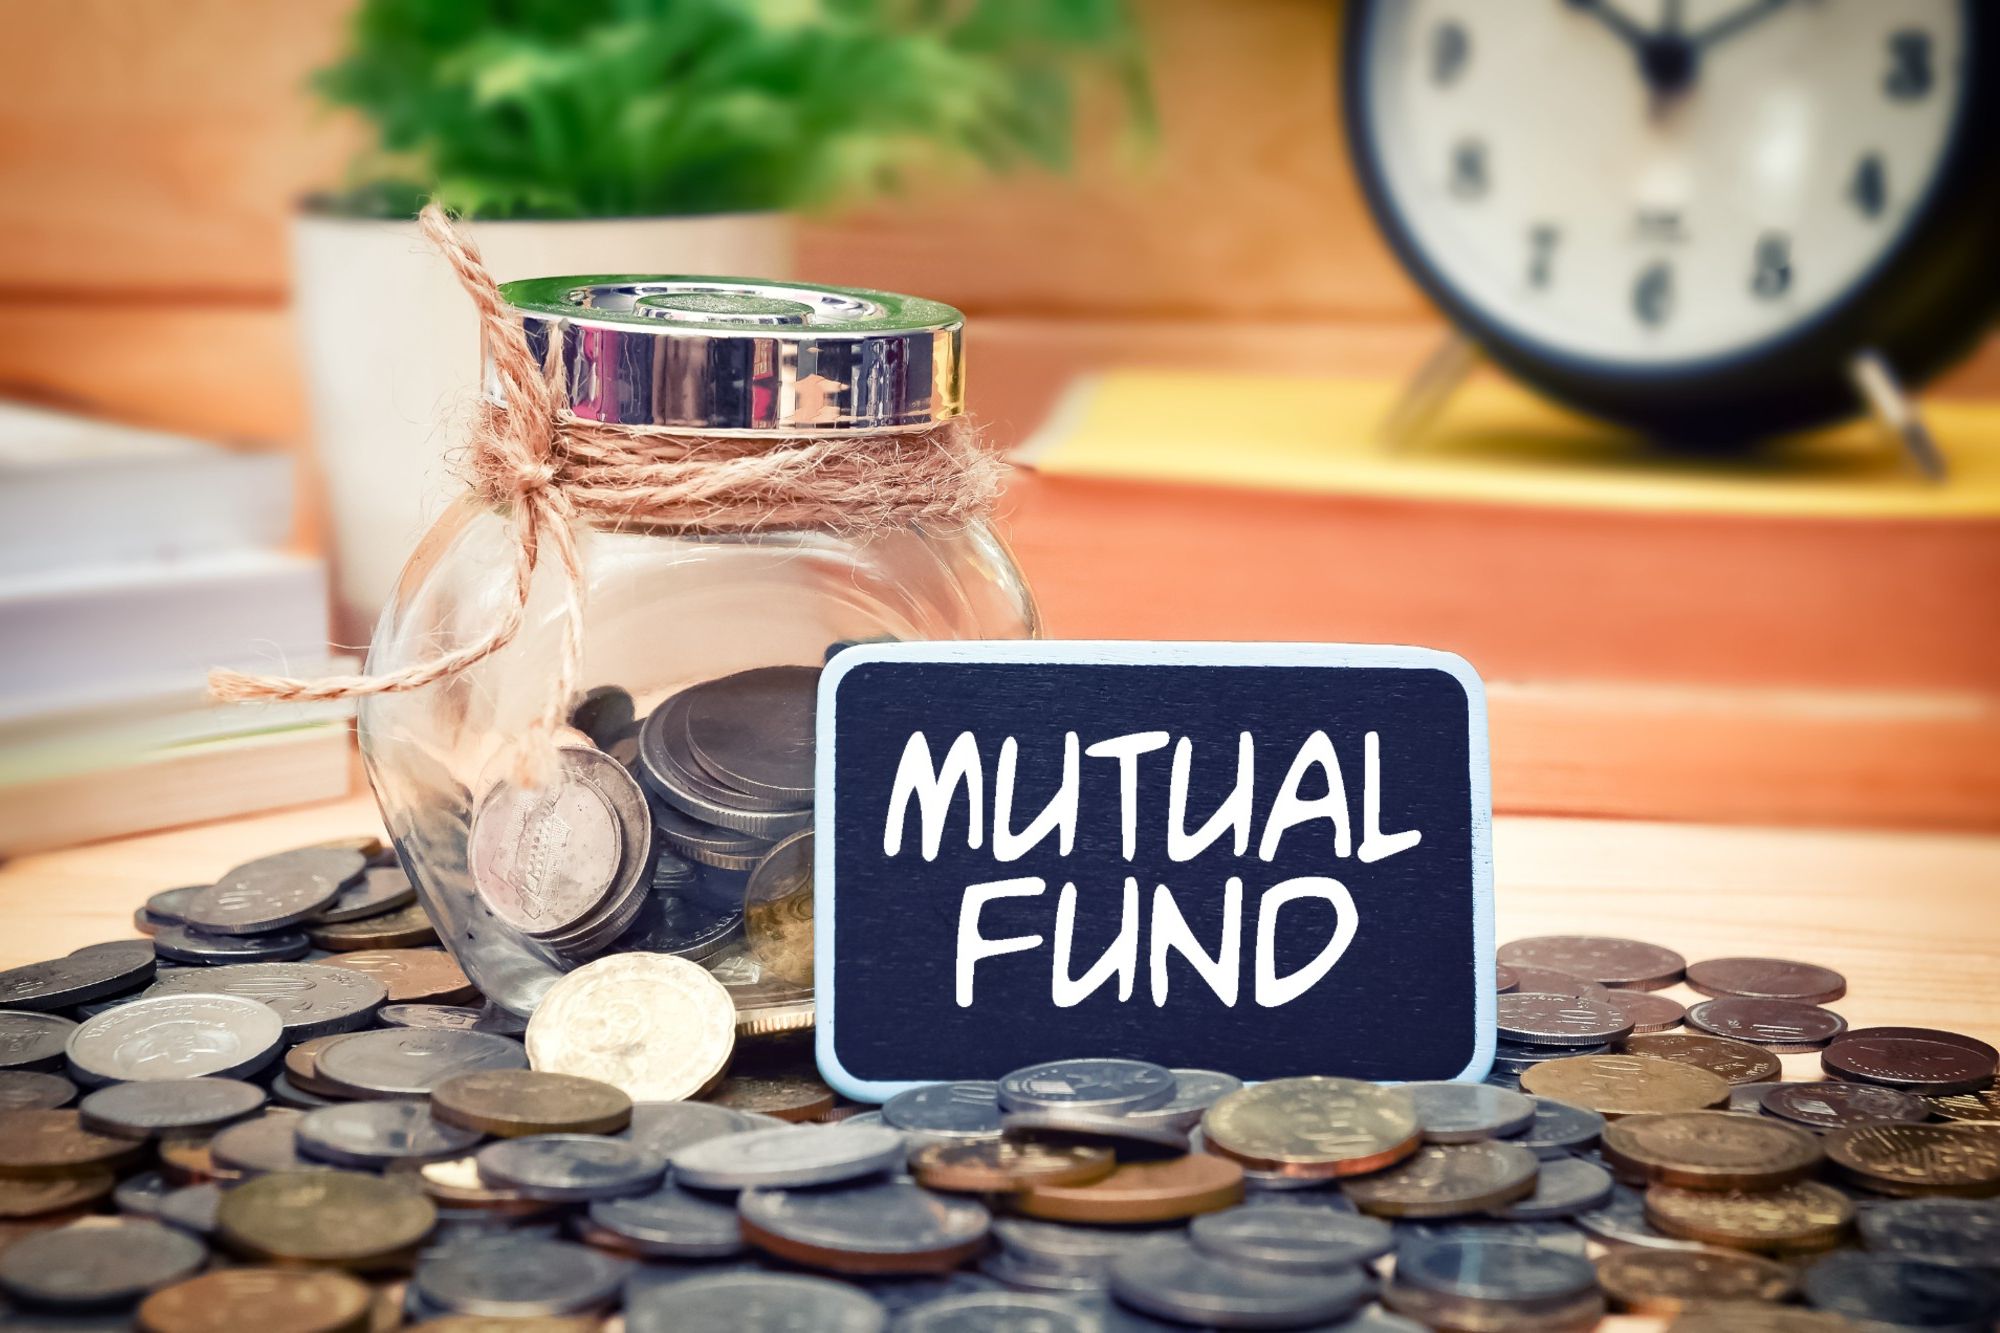 Quỹ tương hỗ - Mutual Fund - mang lại nhiều lợi ích cho các nhà đầu tư cá nhân